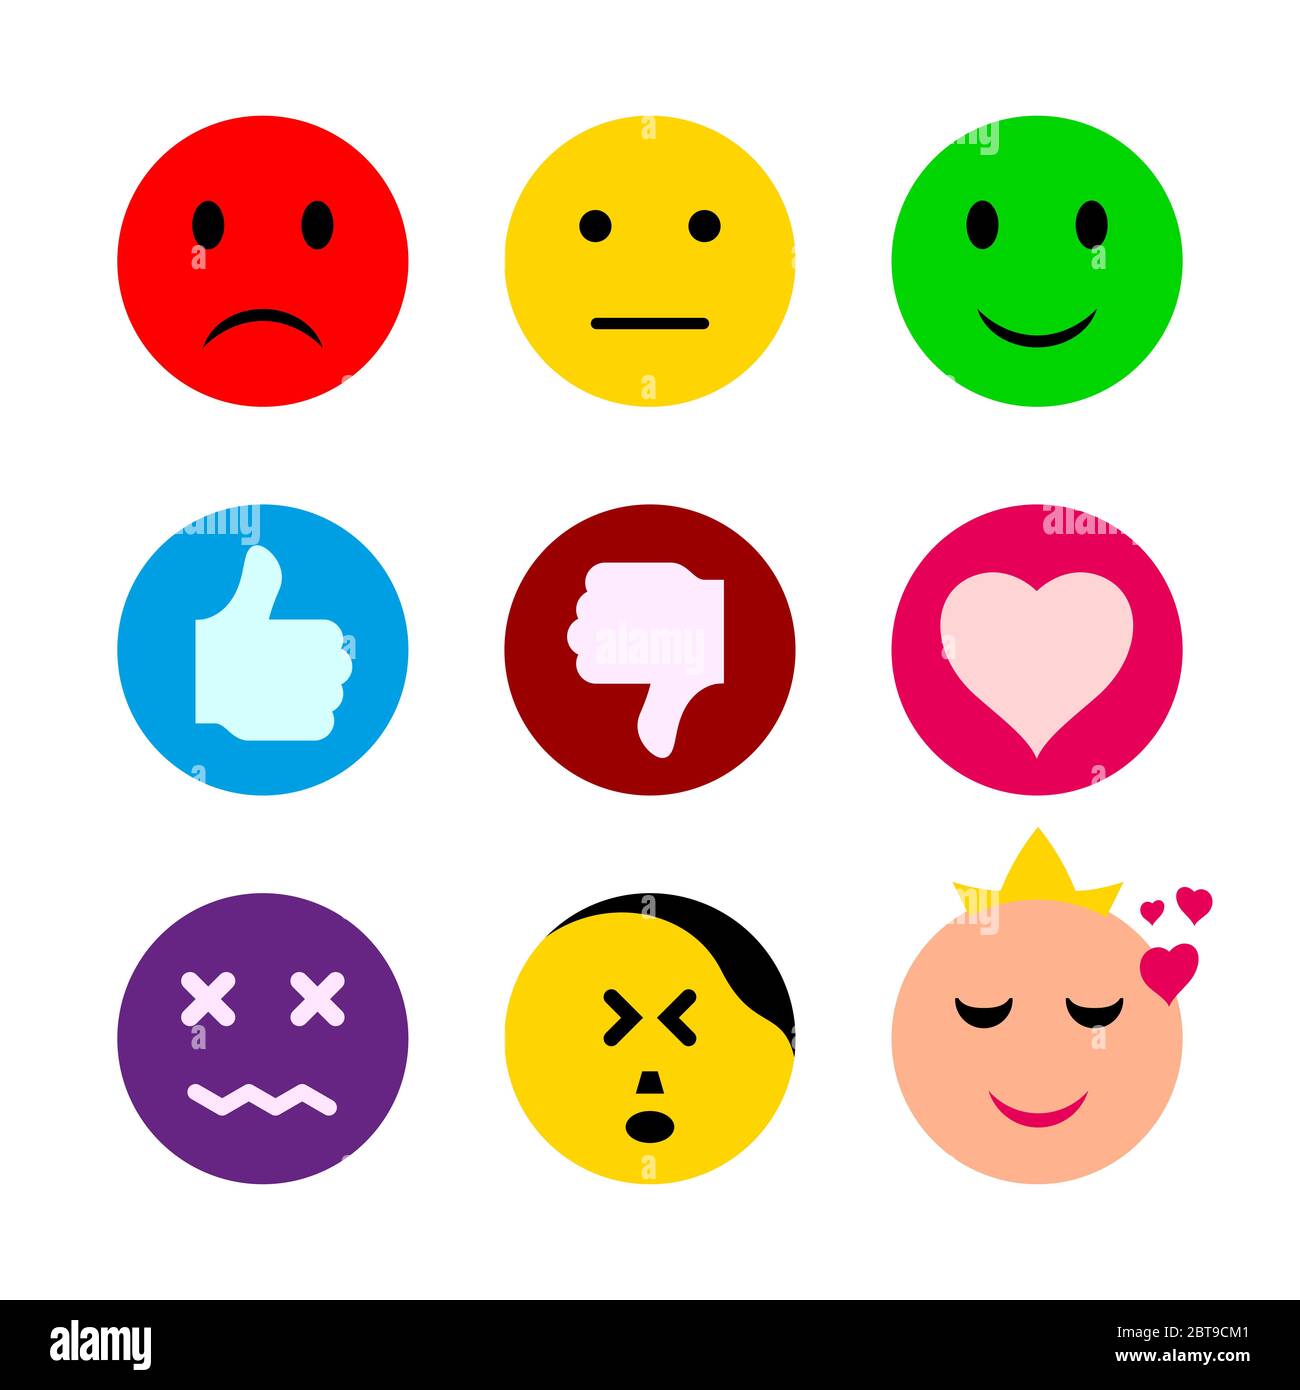 Emoticones Conjunto De Símbolos De Las Redes Sociales Emoticones Emoticones Emoticonos Diseño